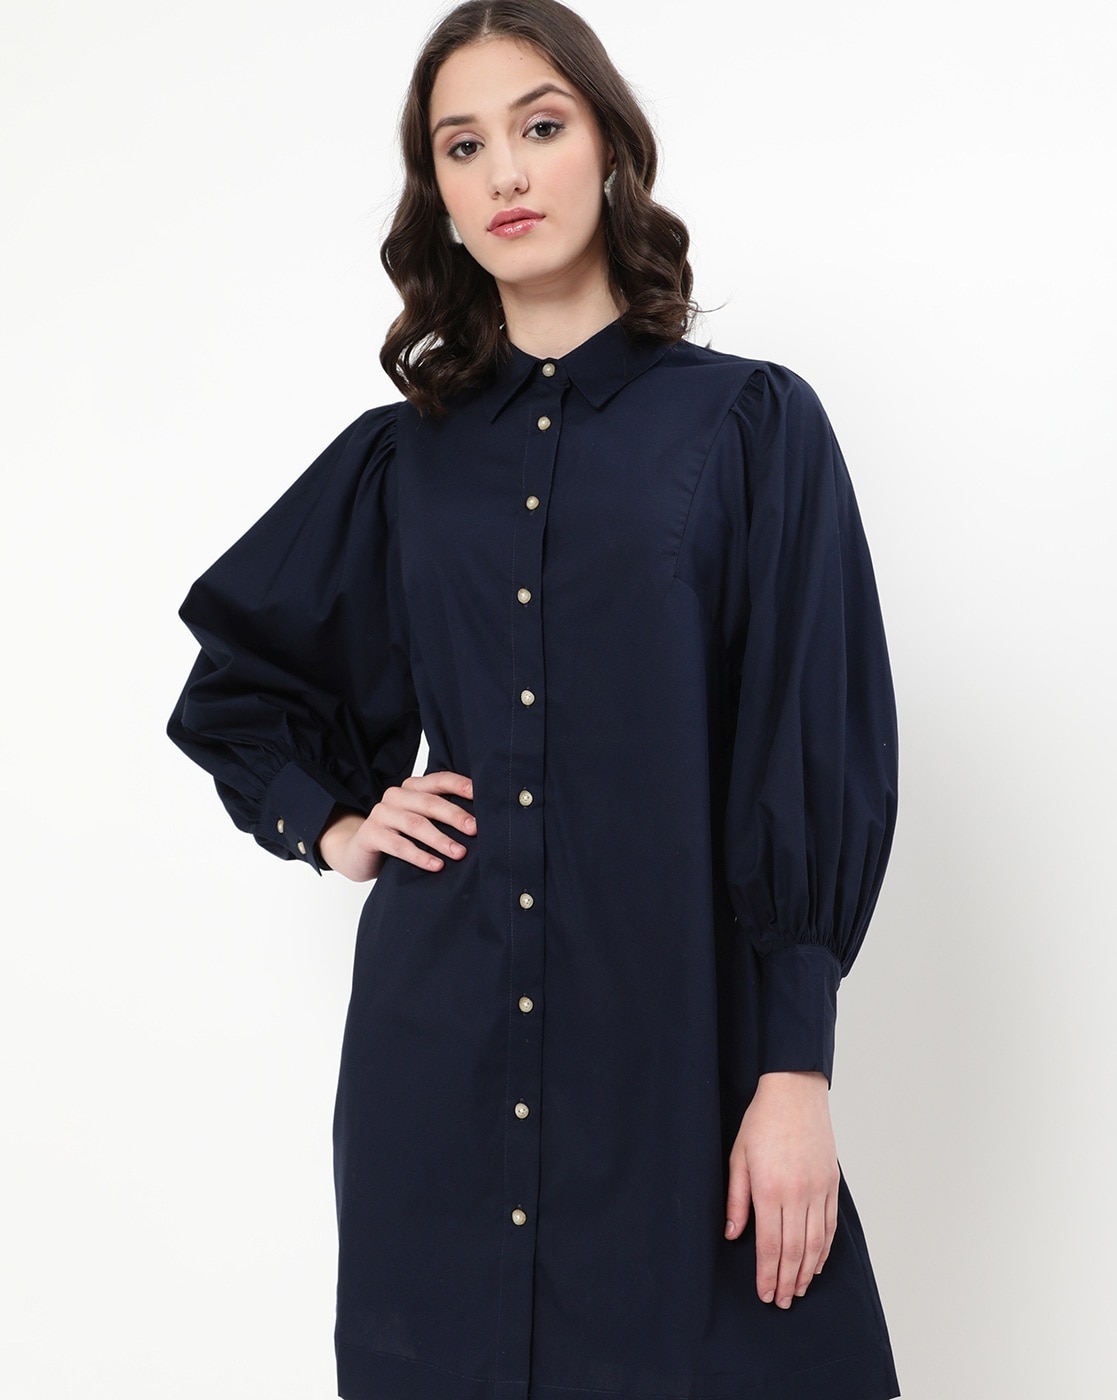 Do bomuld protestantiske Buy Blue Dresses for Women by Vero Moda Online | Ajio.com